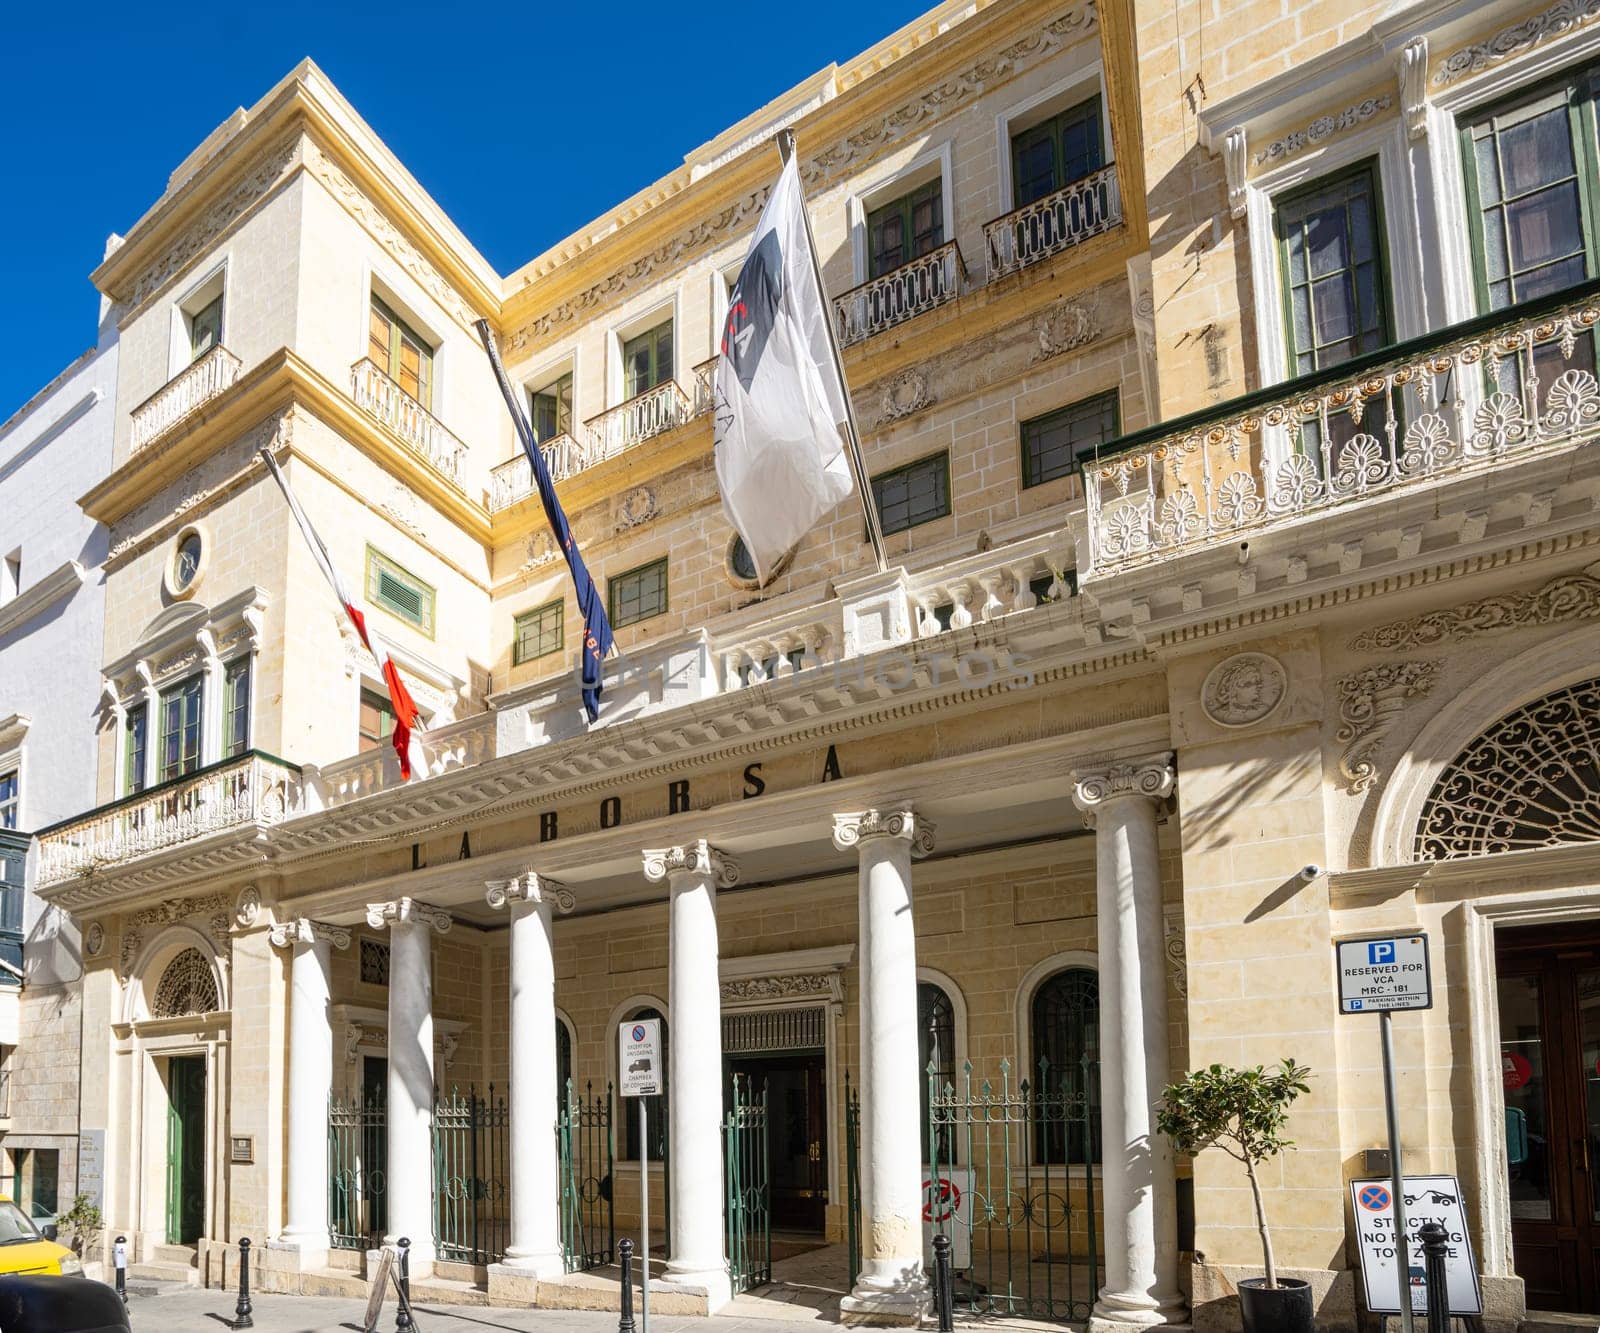 La Borsa building in Valletta, Malta by sergiodv